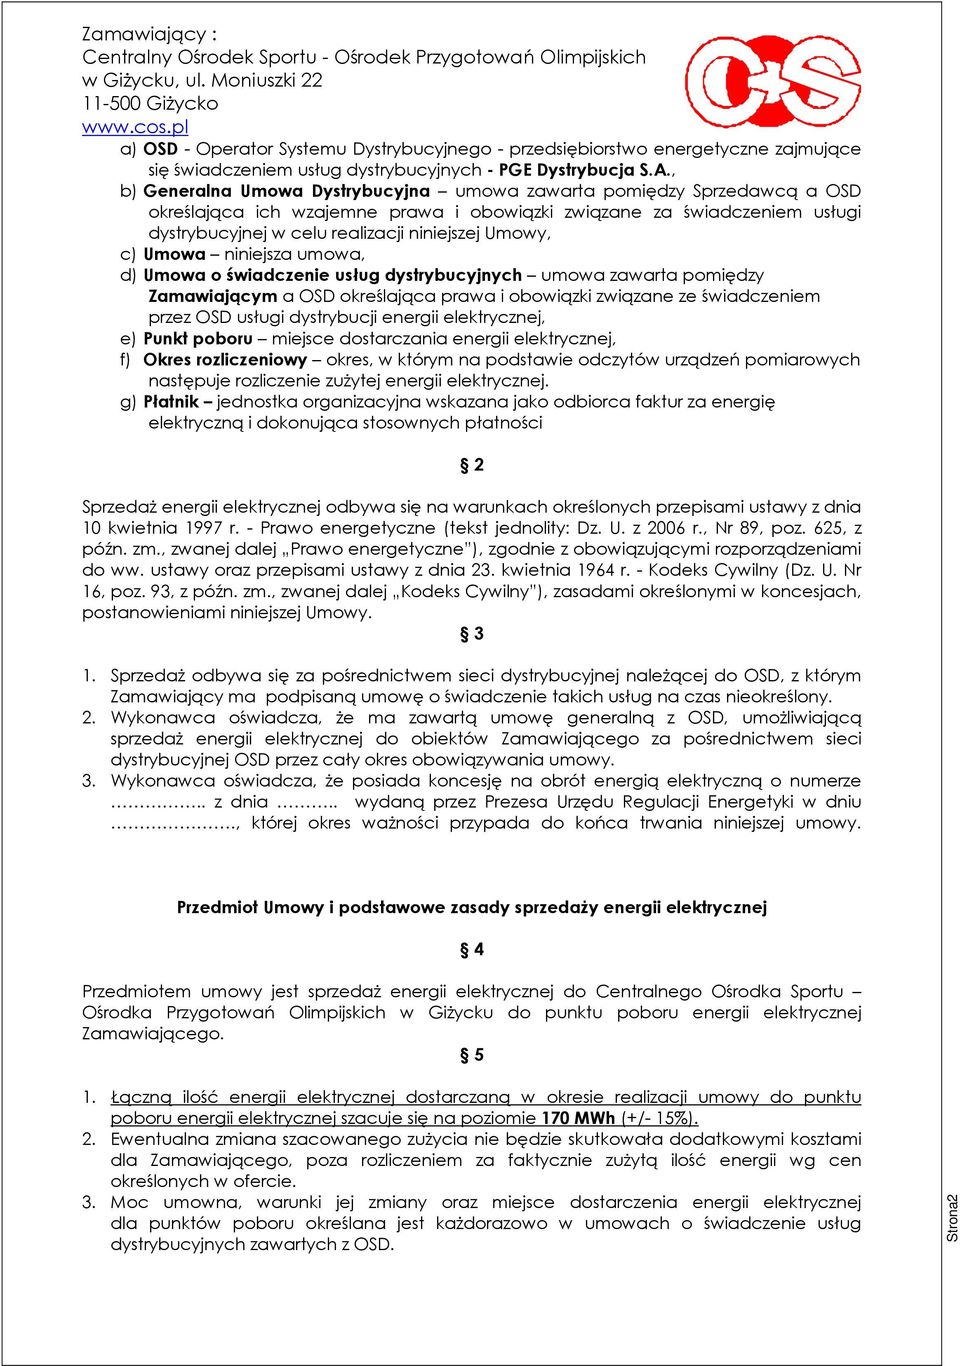 Umowy, c) Umowa niniejsza umowa, d) Umowa o świadczenie usług dystrybucyjnych umowa zawarta pomiędzy Zamawiającym a OSD określająca prawa i obowiązki związane ze świadczeniem przez OSD usługi